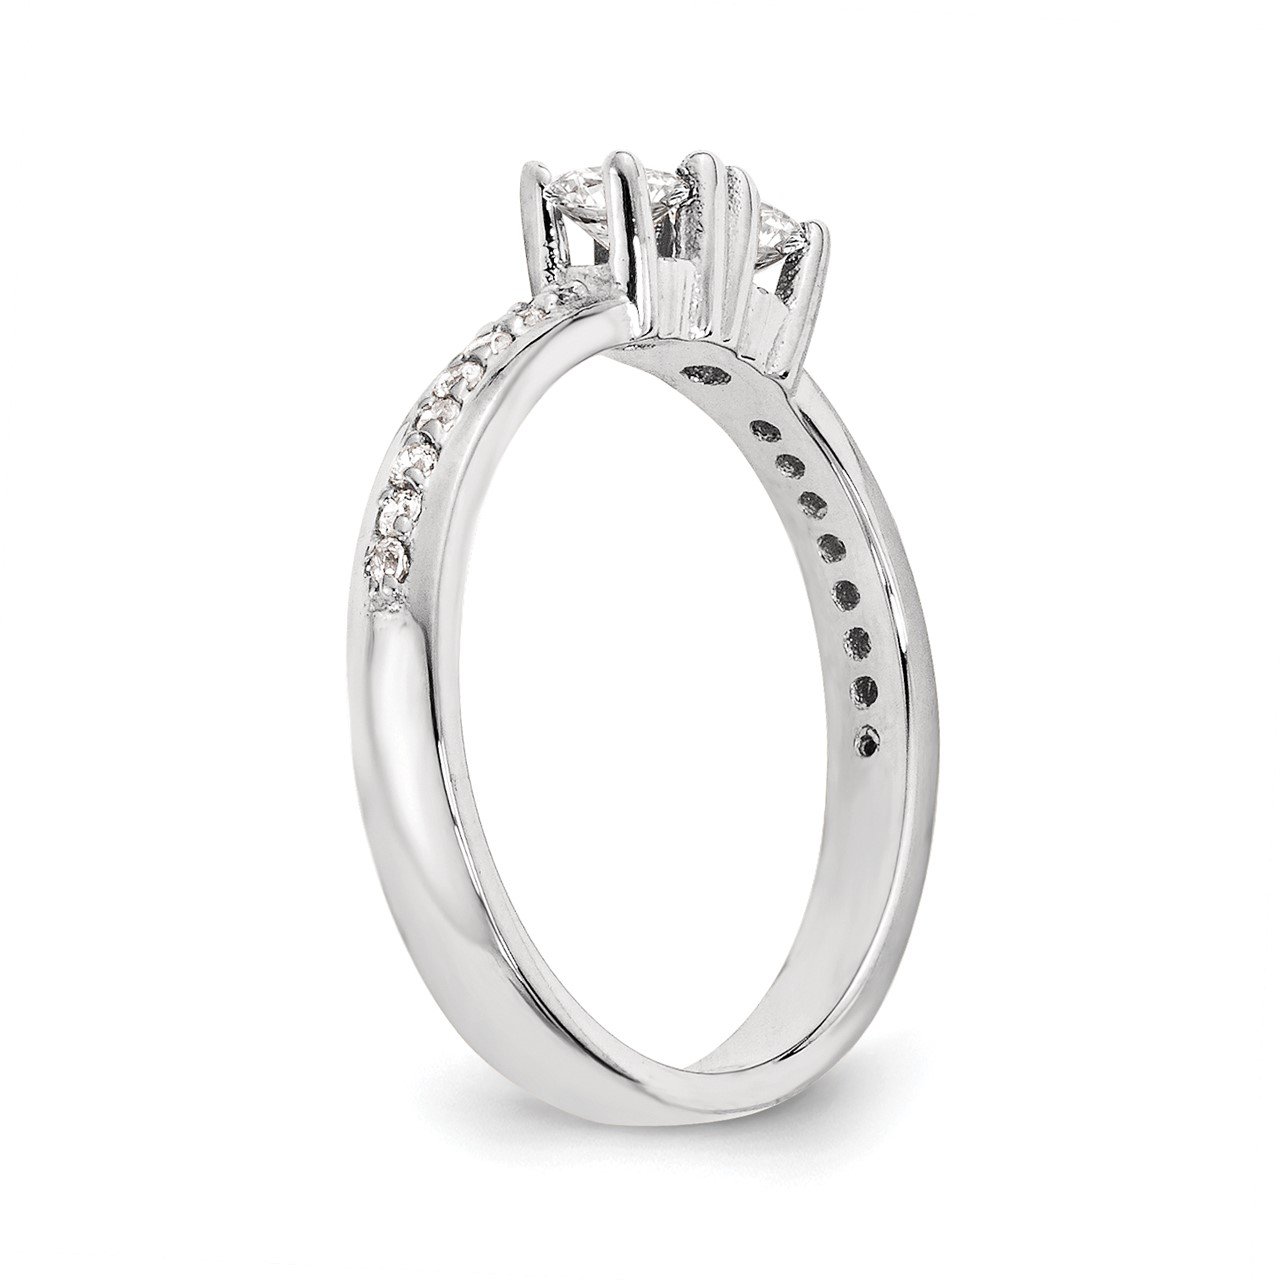 14KW AAA Diamond 2-stone Ring Semi-Mount - 4.8 mm center stones-5